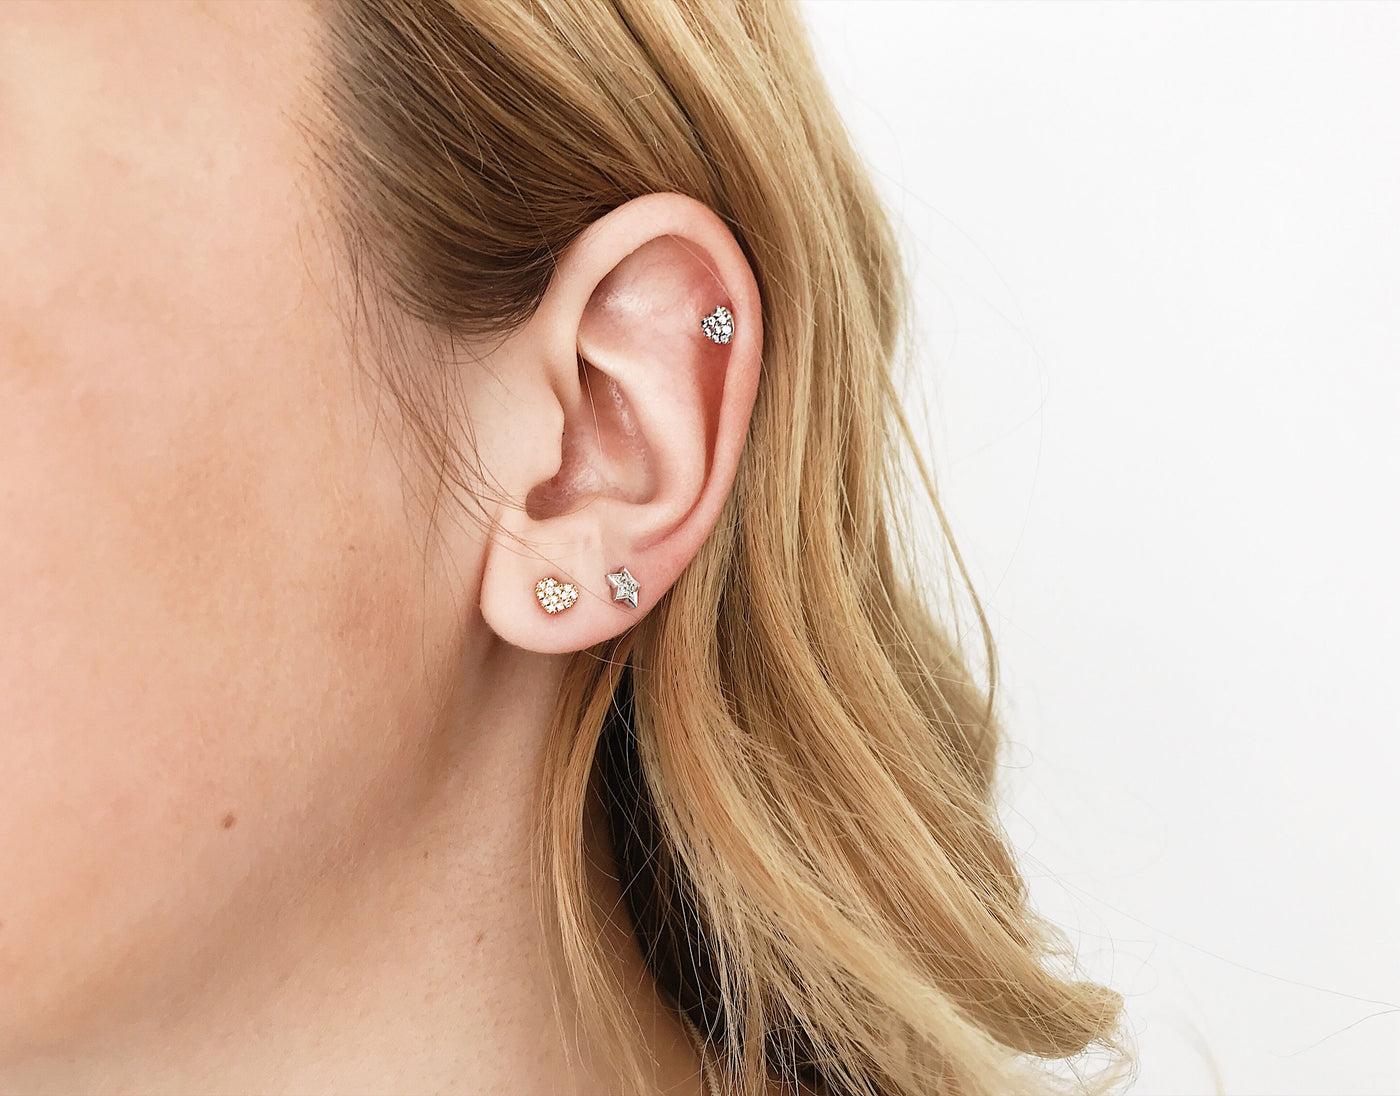 Diamond heart stud earrings